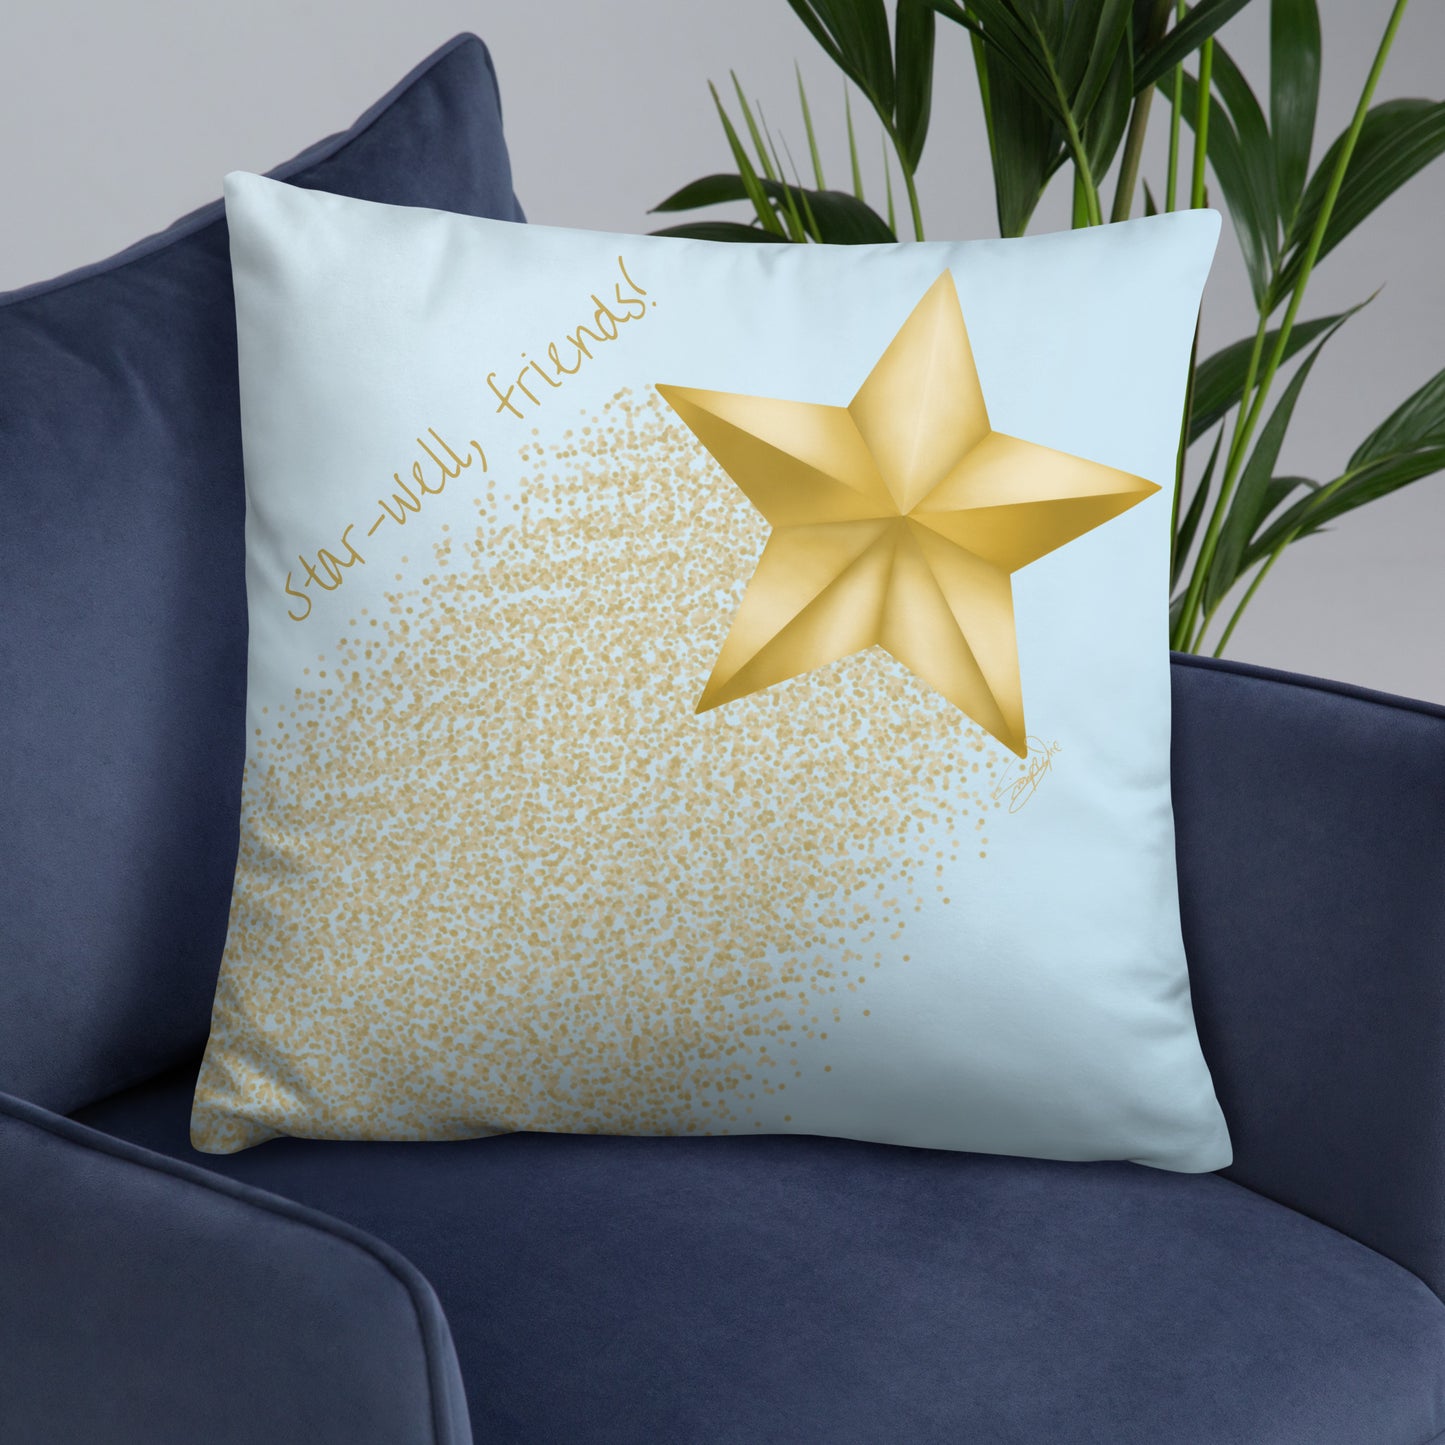 Star-well, Friends! - Pillow